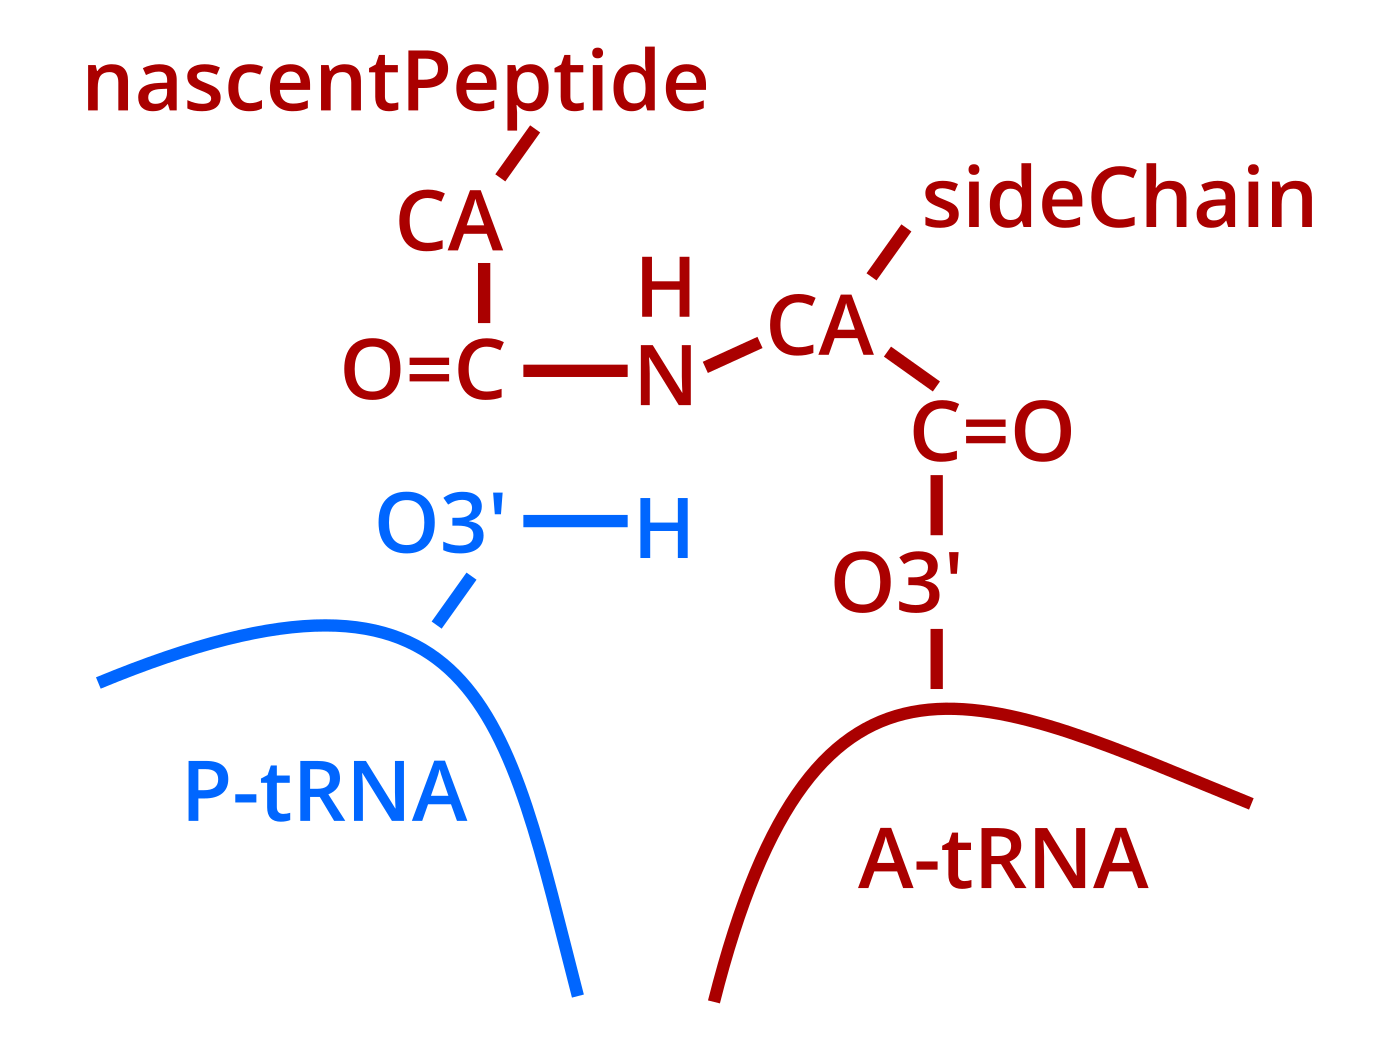 peptide bond formation